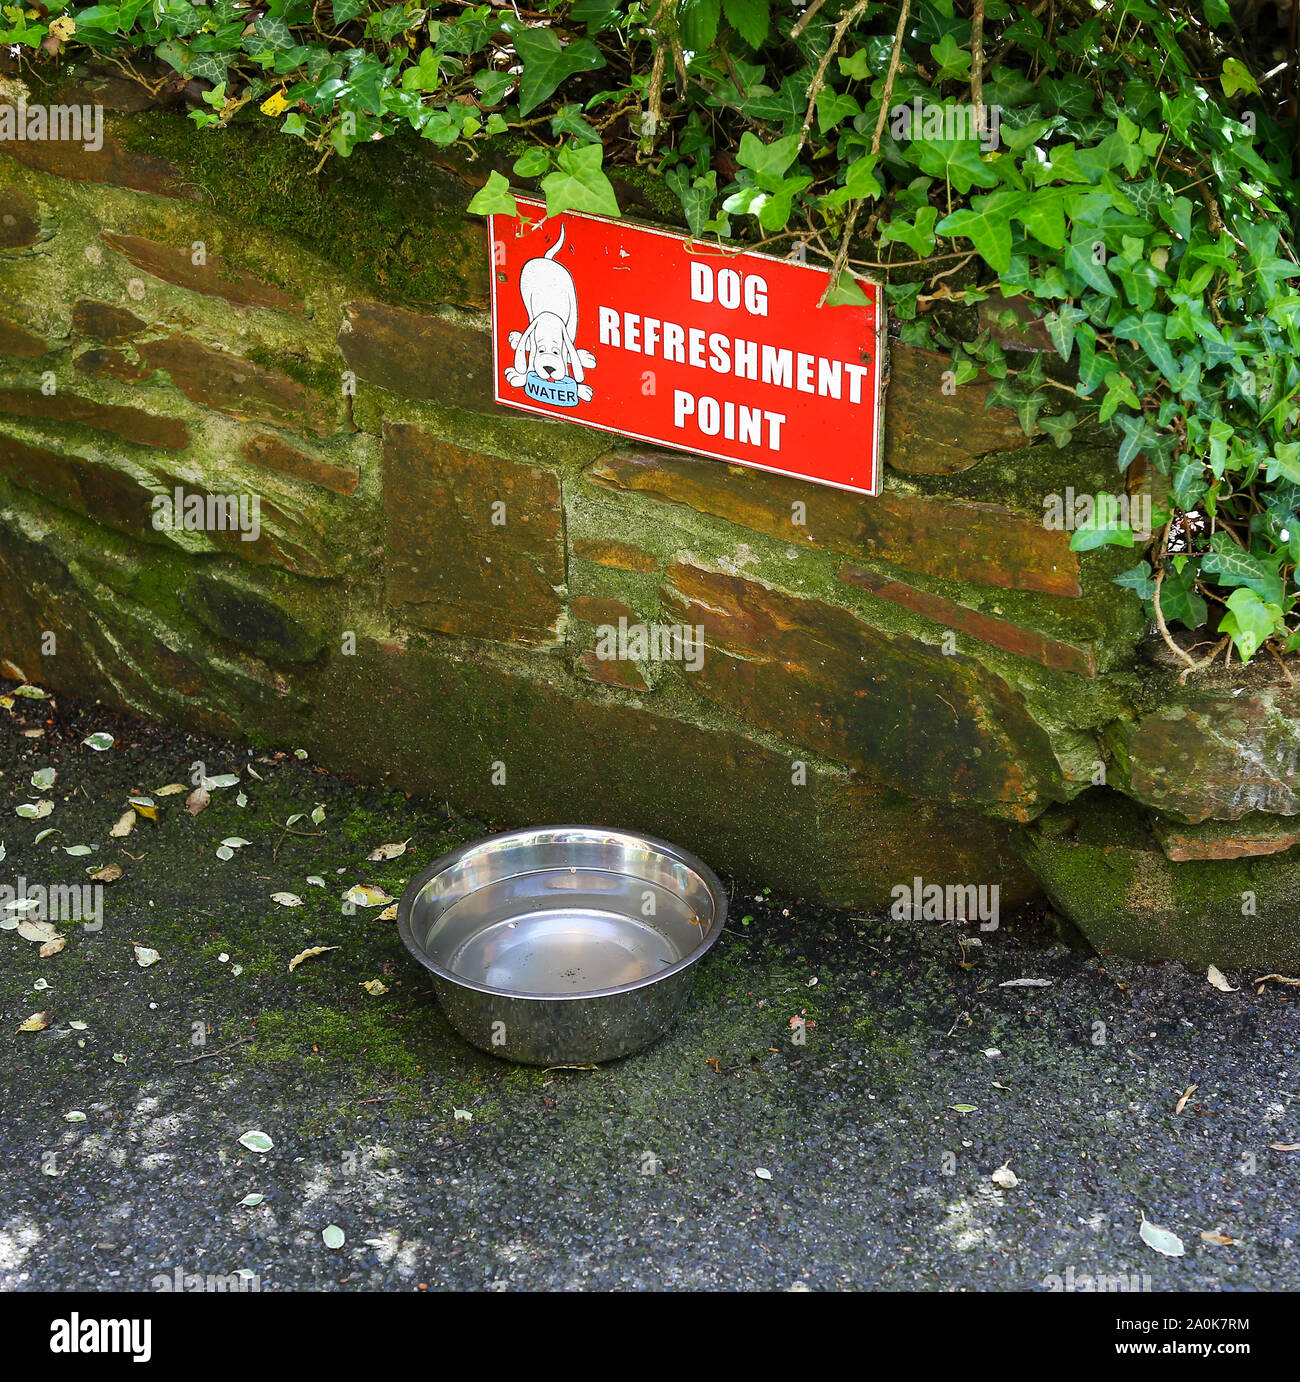 Un signe sur un chien bol avec de l'eau dans lui disant 'dog' point de rafraîchissement, England, UK Banque D'Images